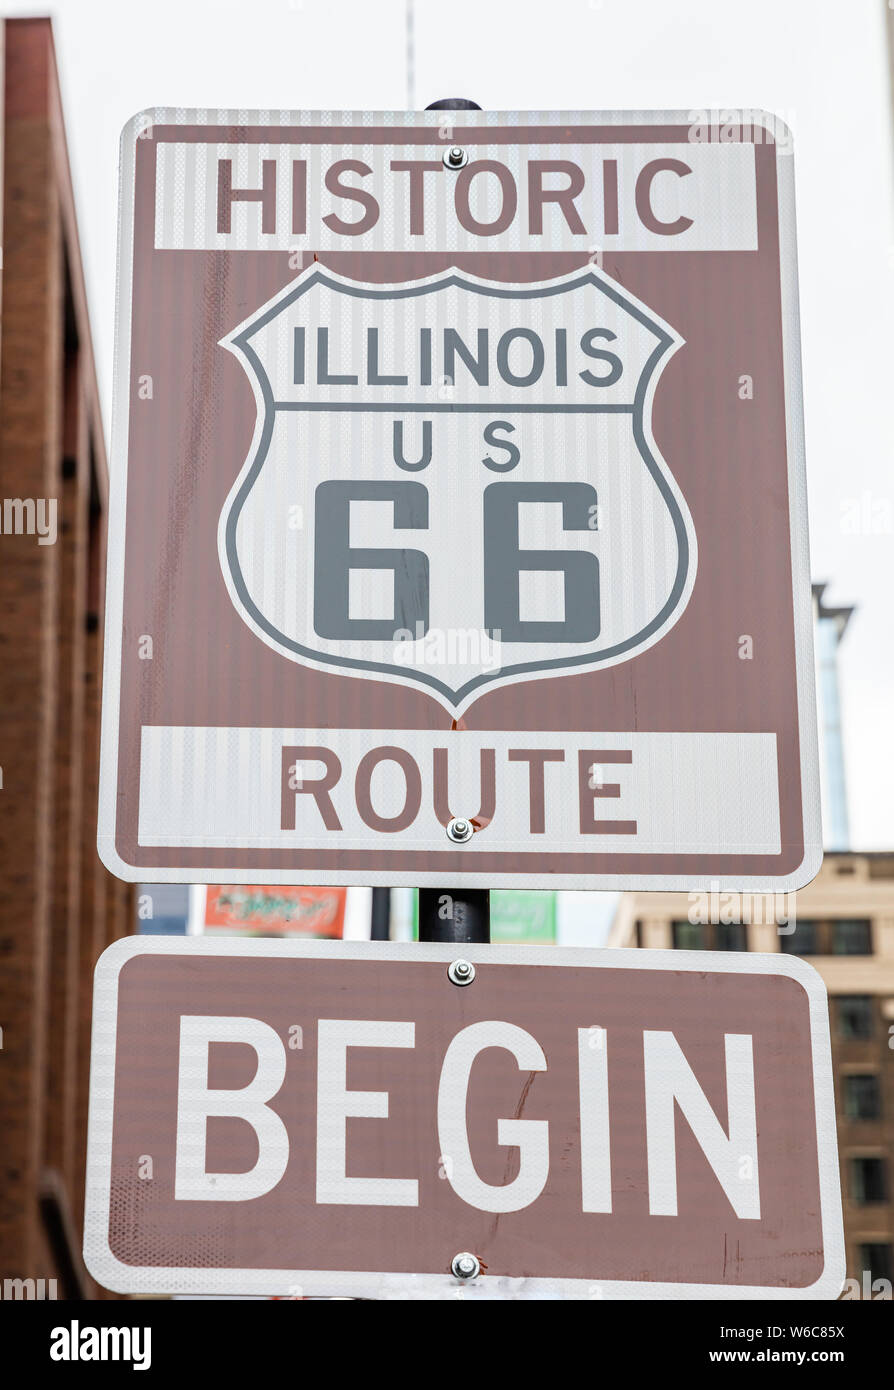 Route 66 Illinois beginnen. Schild am Chicago City Downtown. Route 66 Strasse der klassischen historischen Roadtrip in den USA Stockfoto